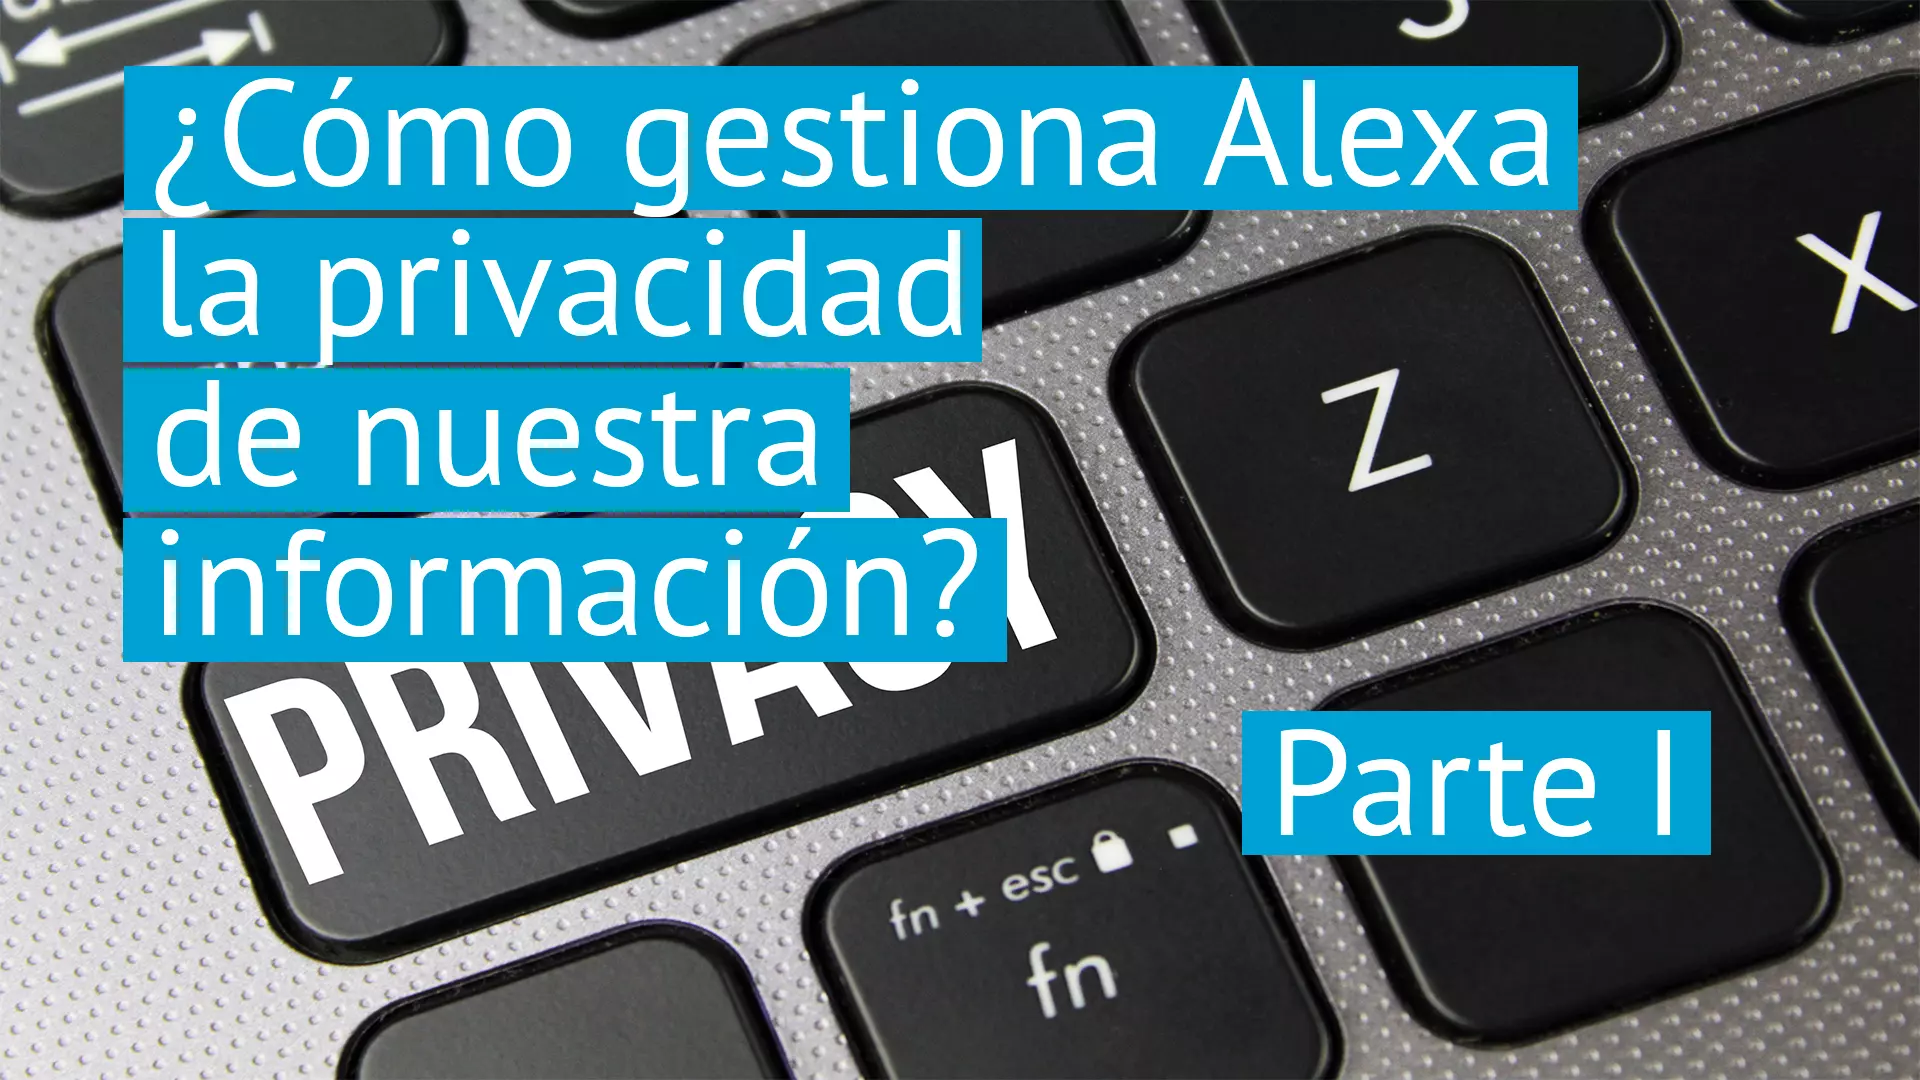 ¿Cómo gestiona Alexa la privacidad de nuestra información? Parte I